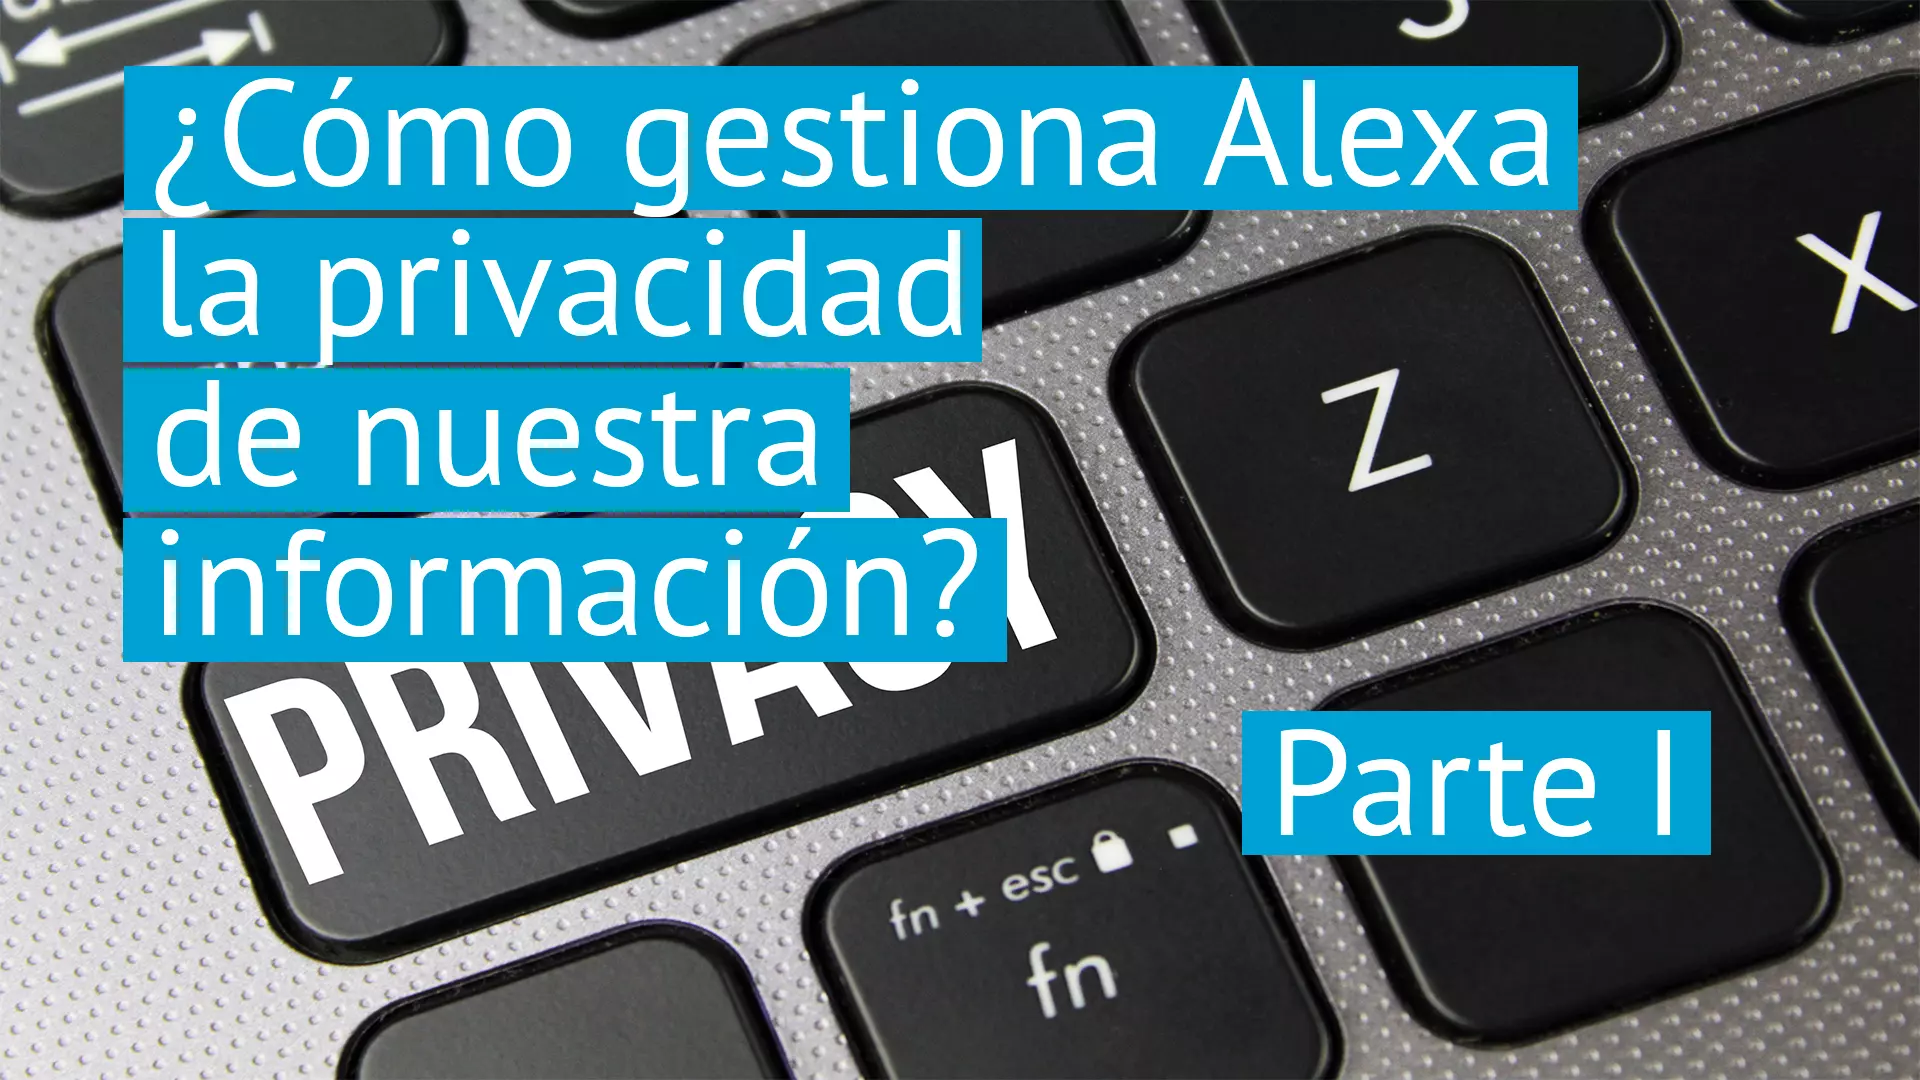 ¿Cómo gestiona Alexa la privacidad de nuestra información? Parte I